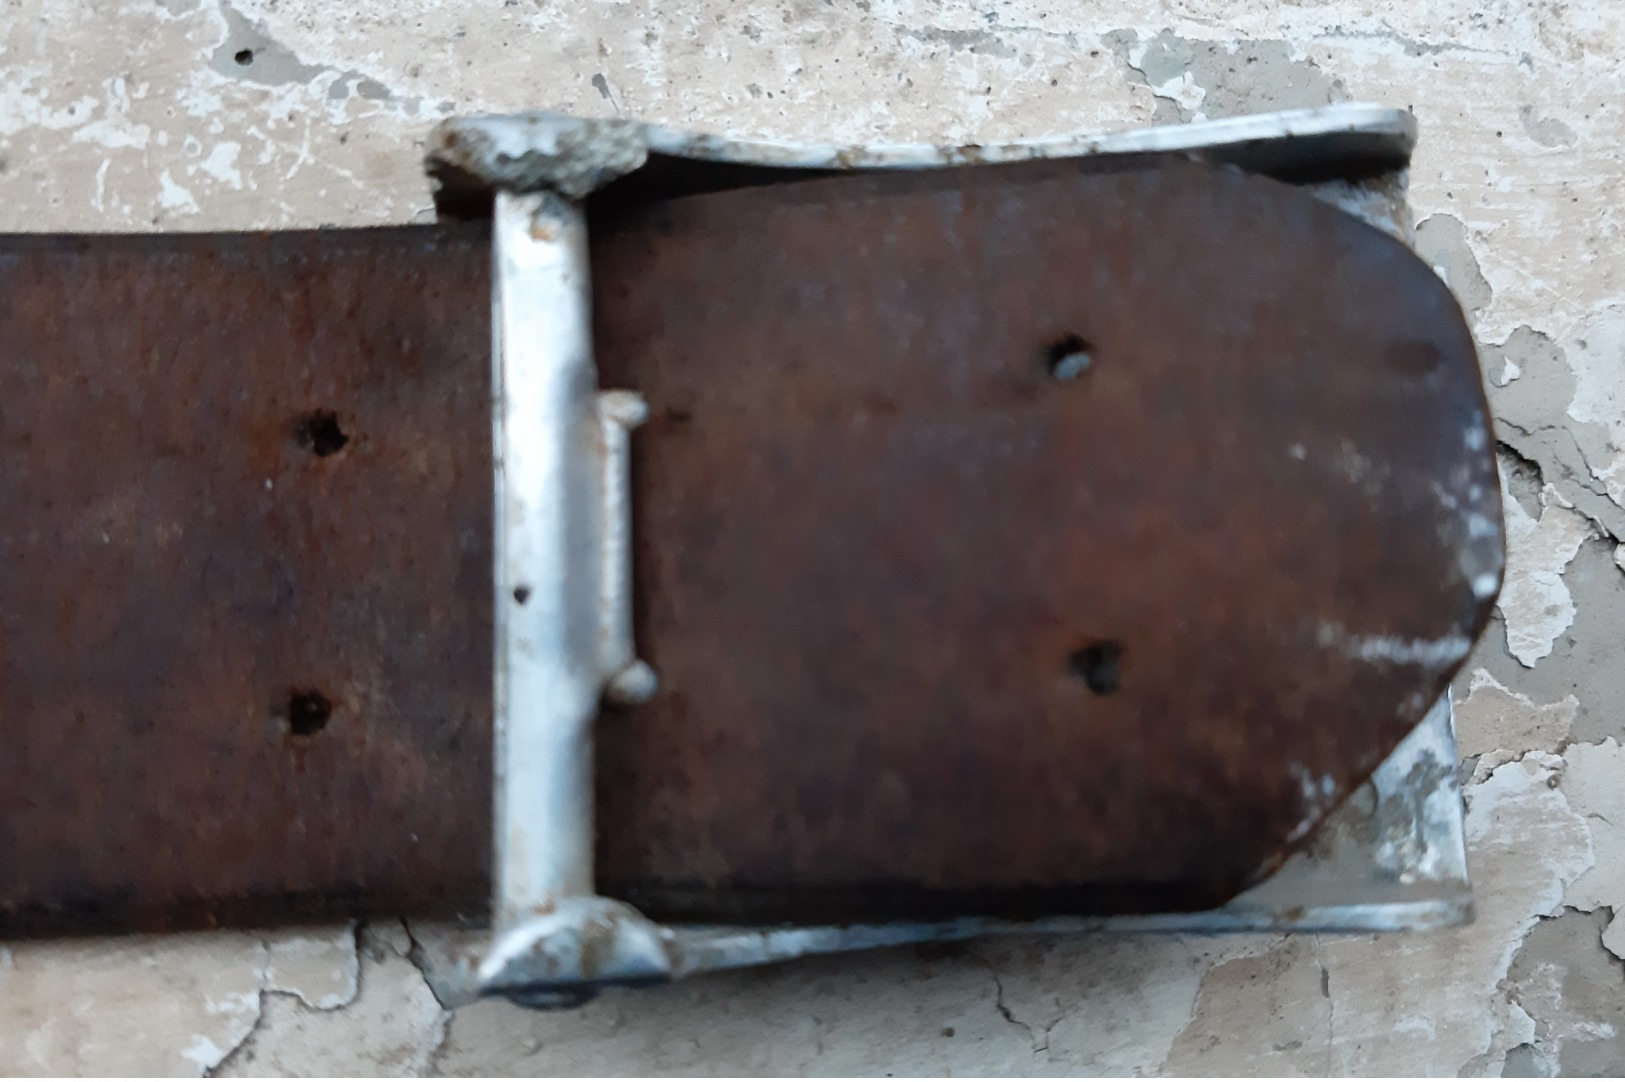 Cinturone Tedesco Nazista Per HITLERJUGEND (HJ) Con Fibbia In Alluminio Marcata (GERMANIA WW2) - Equipement